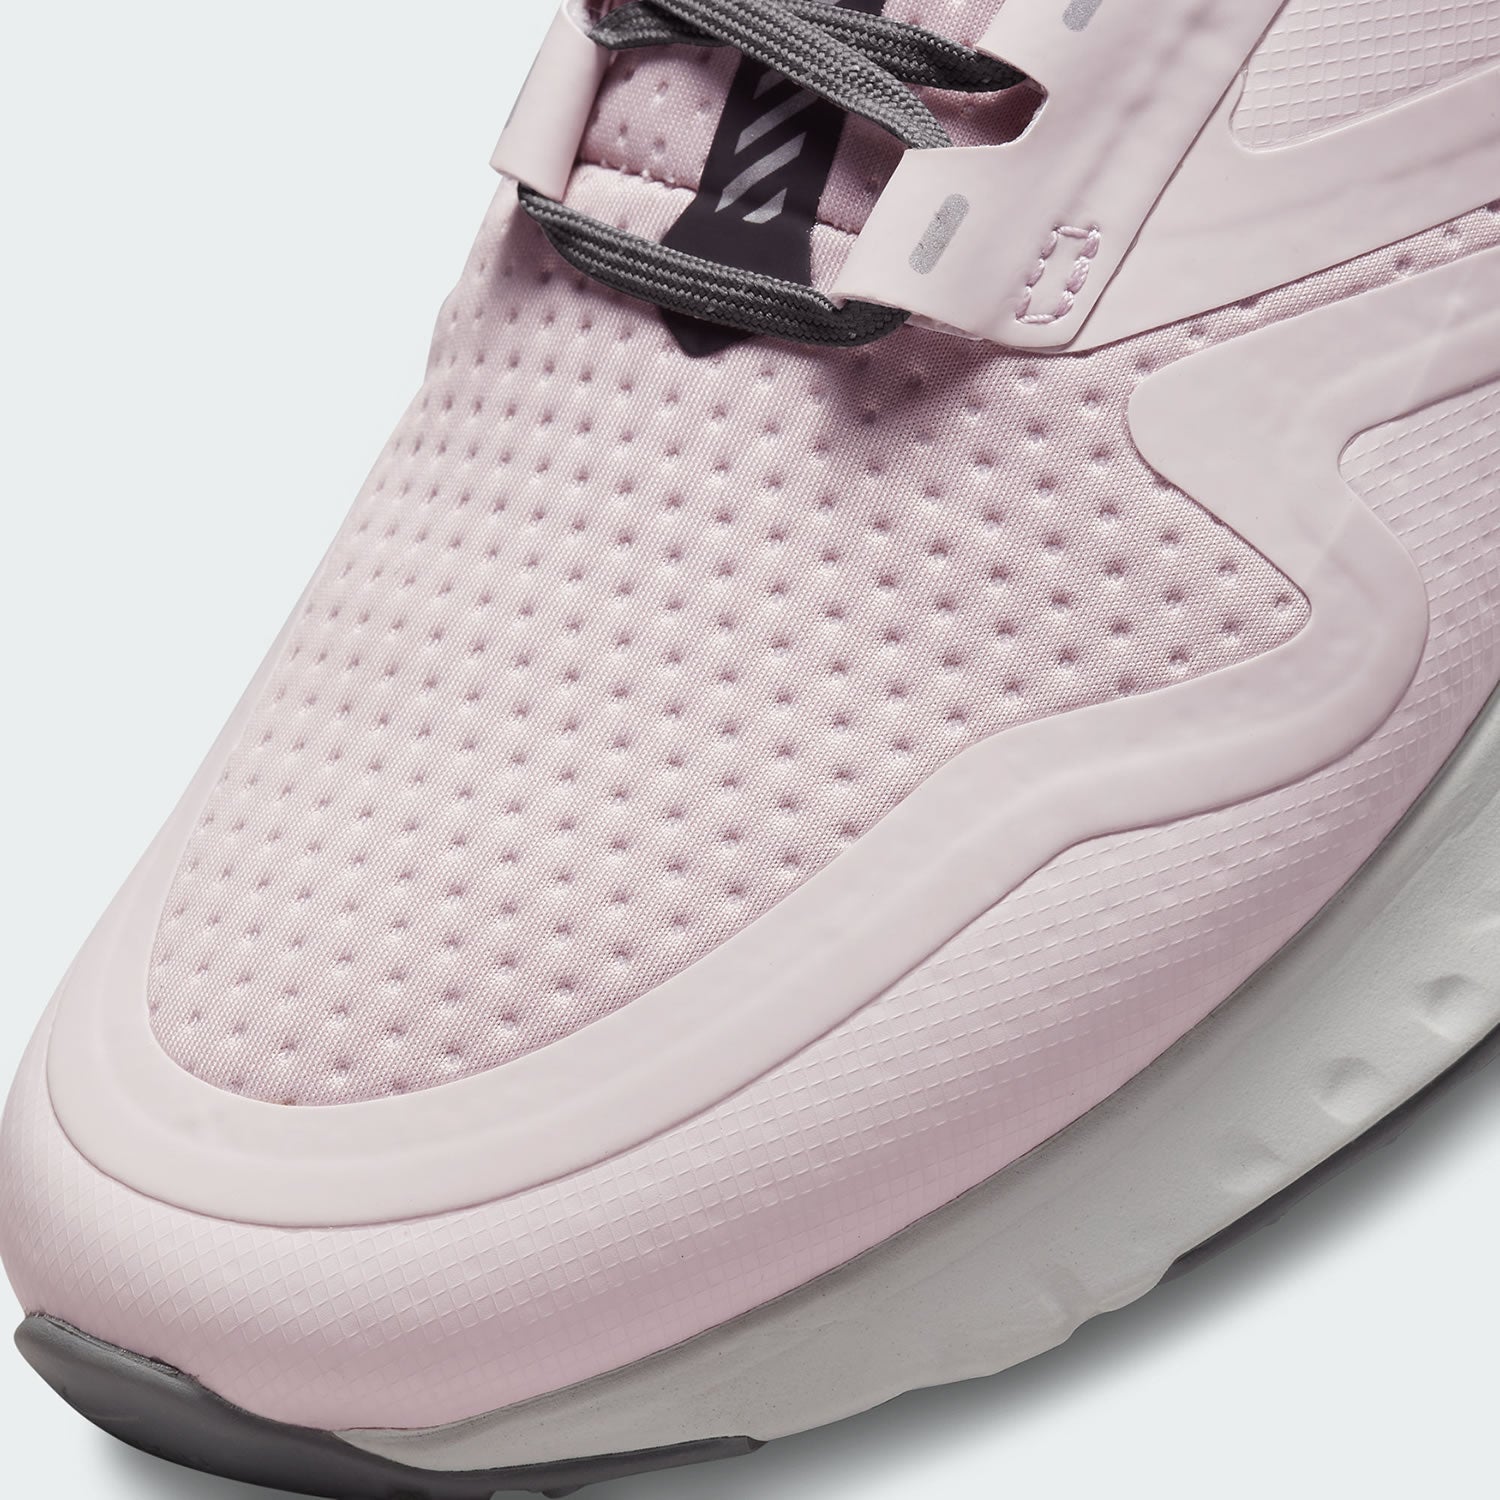 Cadeau kaping Intrekking Nike Odyssey React 2 Shield Women's Shoes BQ1672 601 - Trade Sports